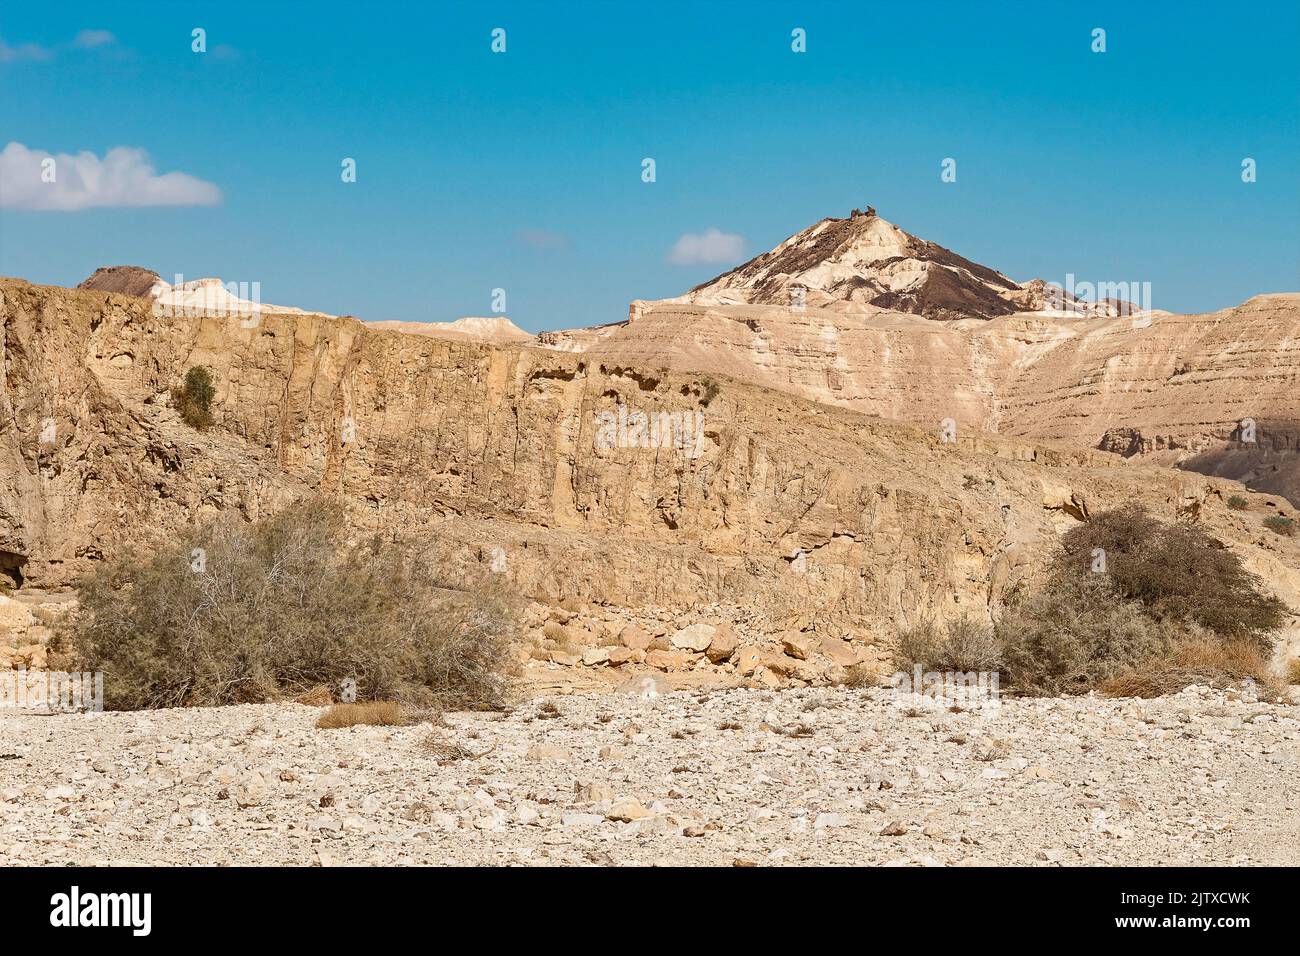 Ein krabbenförmiger Felsblock auf einem vulkanförmigen Kalkstein- und Steinhügel in Israel hinter dem Nekarot-Bach mit blauem Himmel im Hintergrund Stockfoto